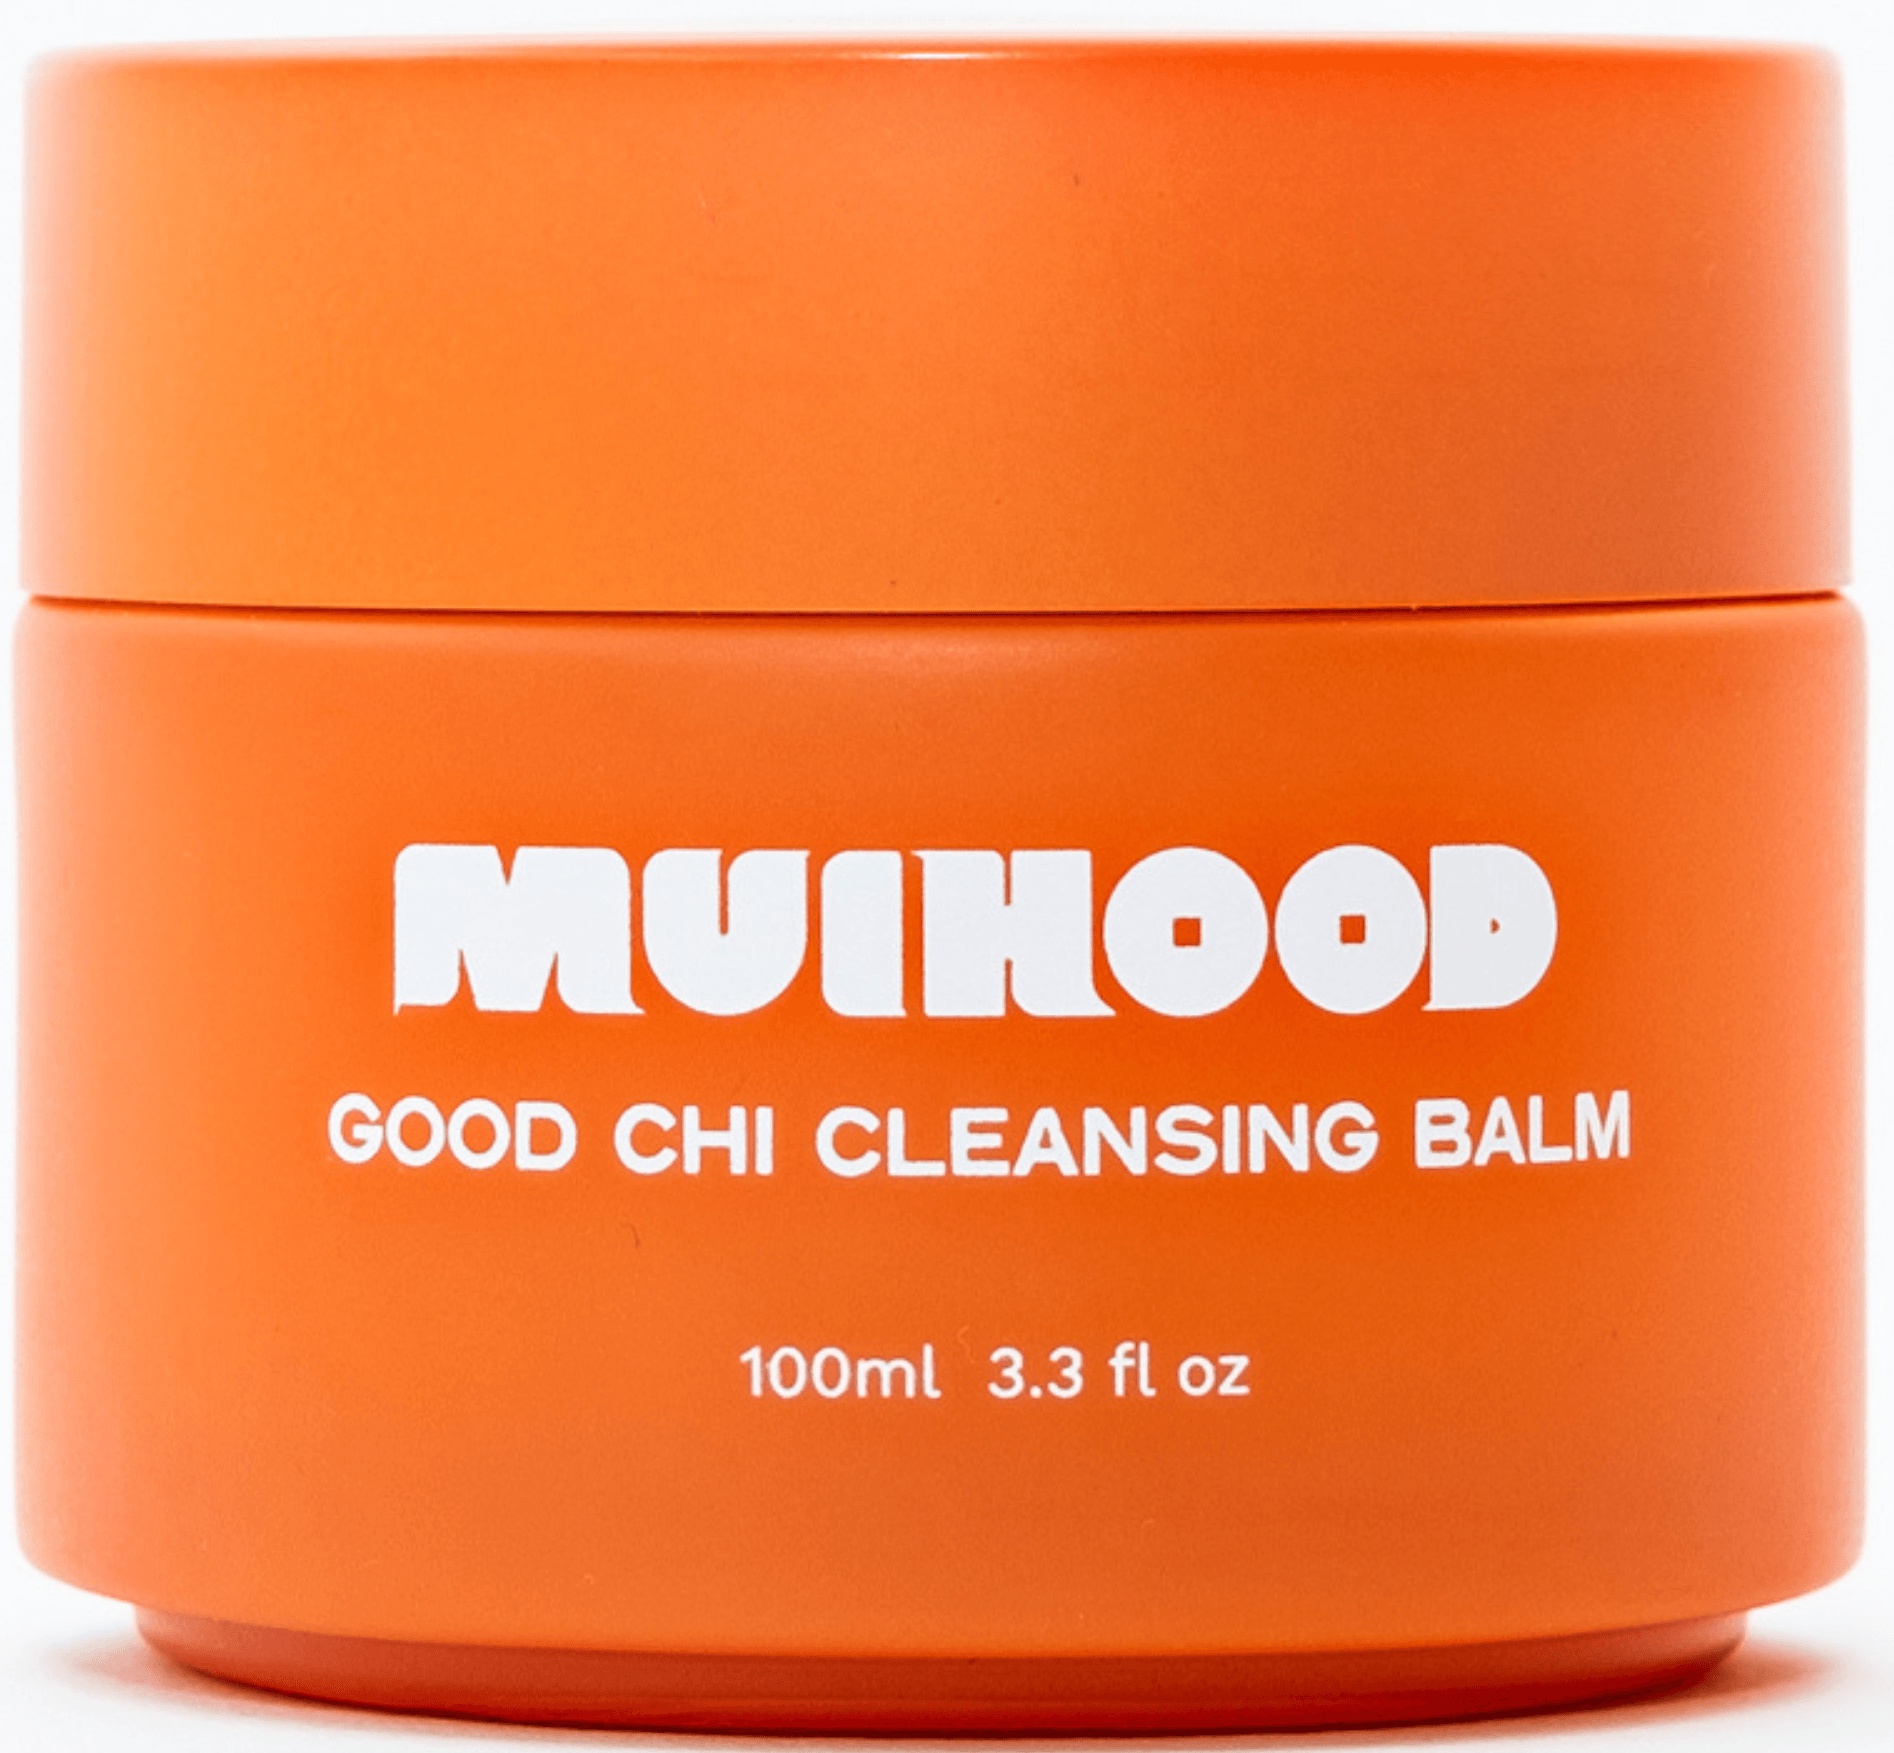 Muihood Good Chi Cleansing Balm